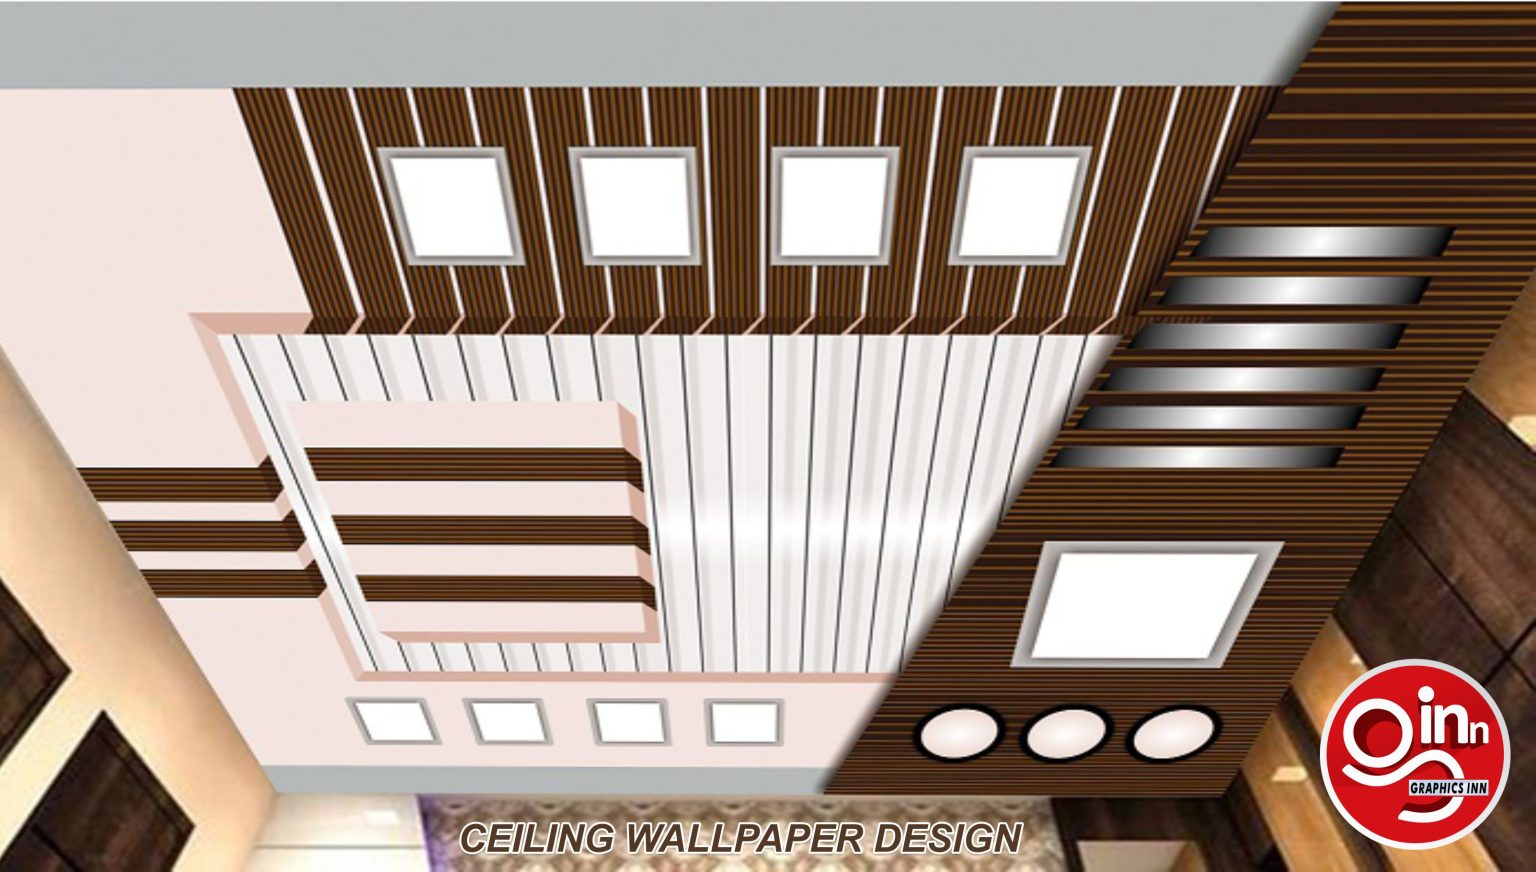 3d celing design wallpaper free download